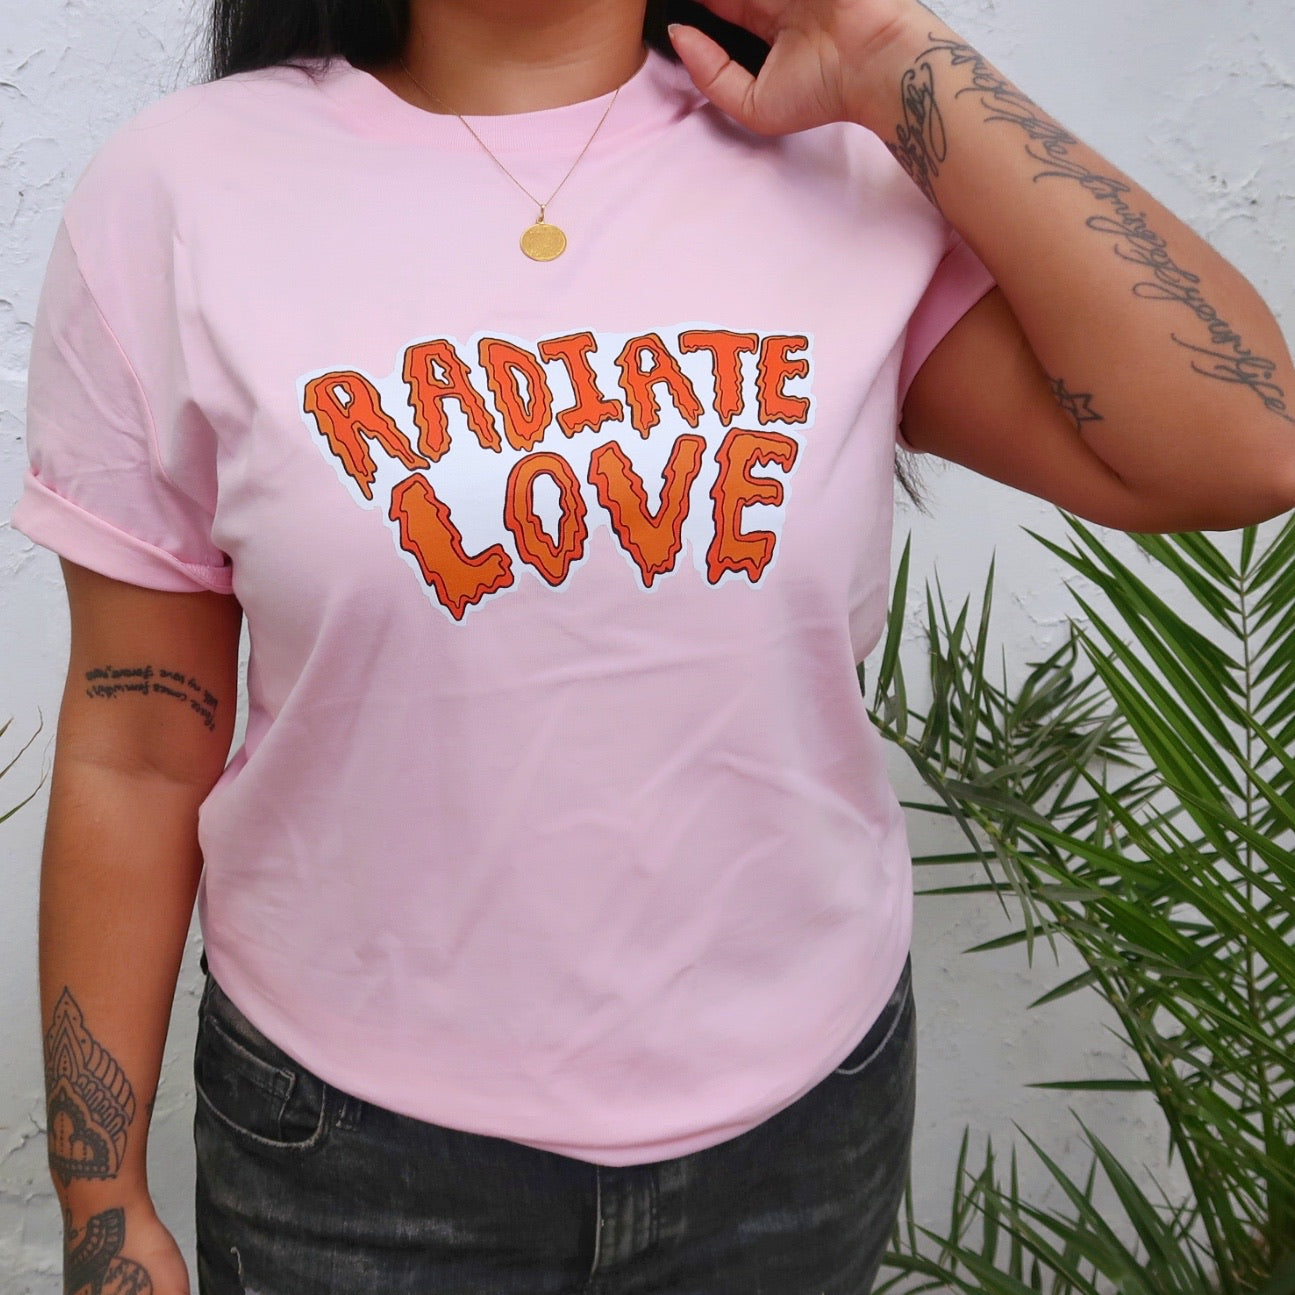 radiate love t-shirt - baby pink